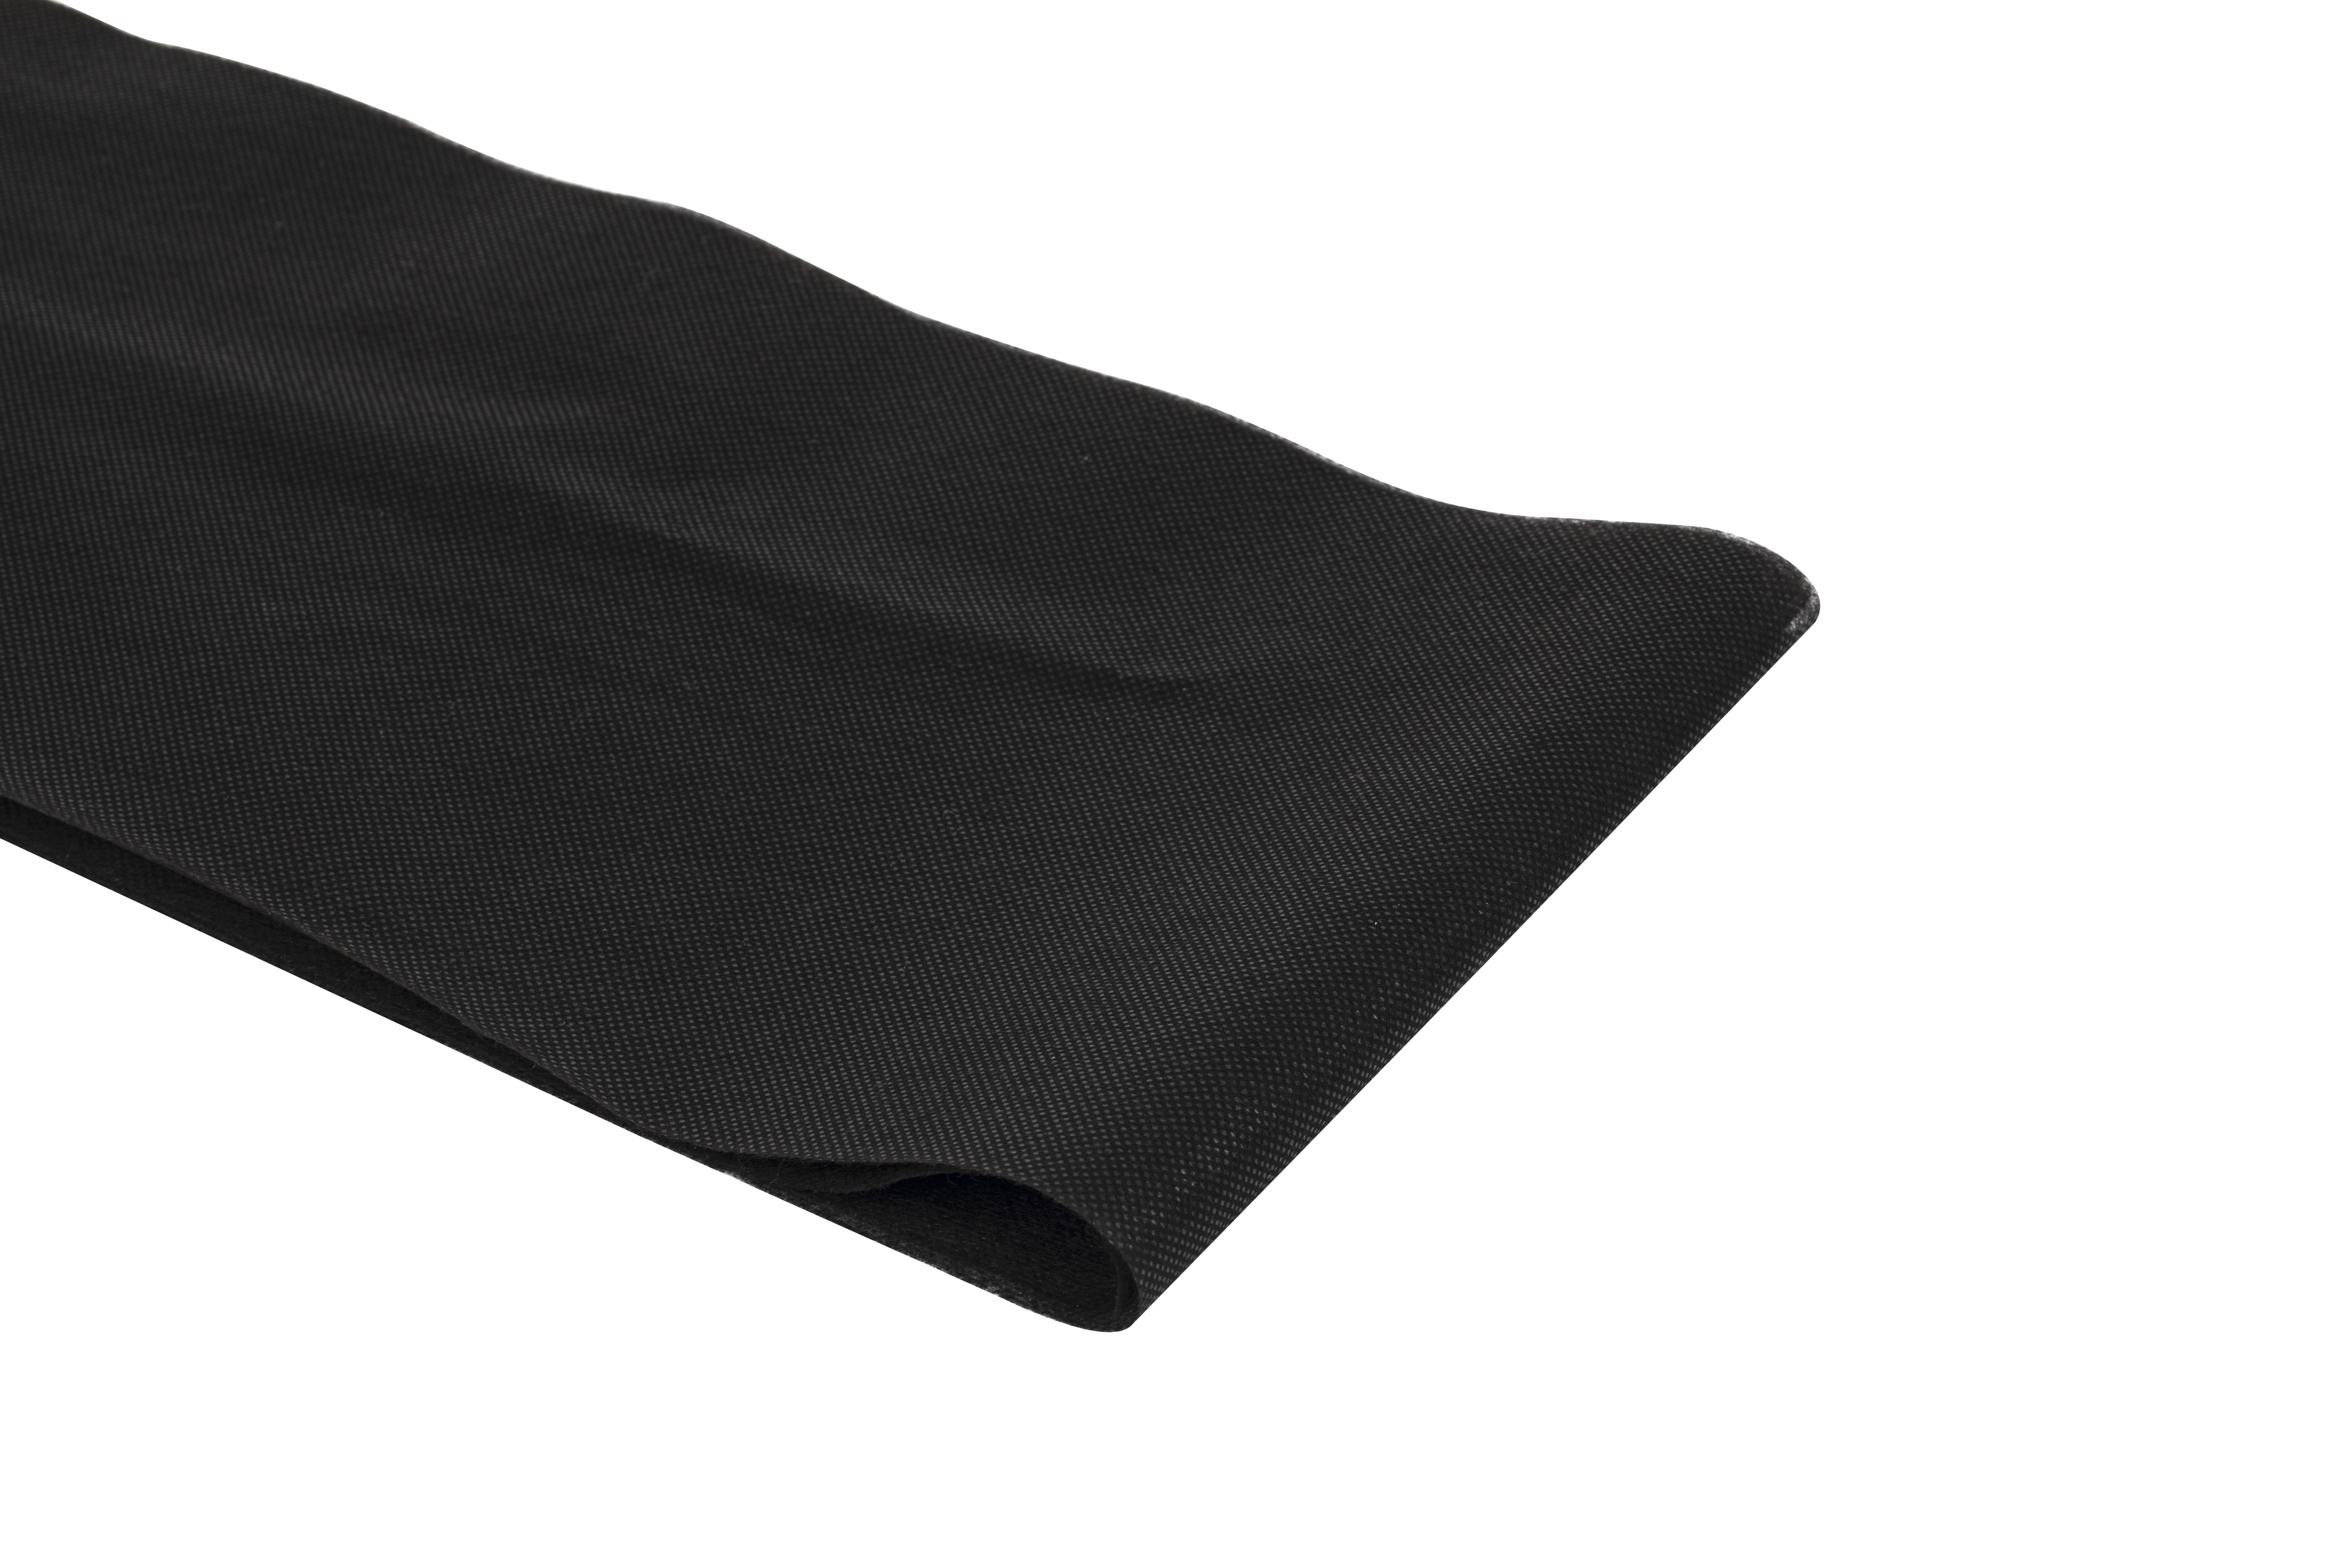 Tessuto non tessuto non tessuto spunbonded nero riutilizzabile per indumenti